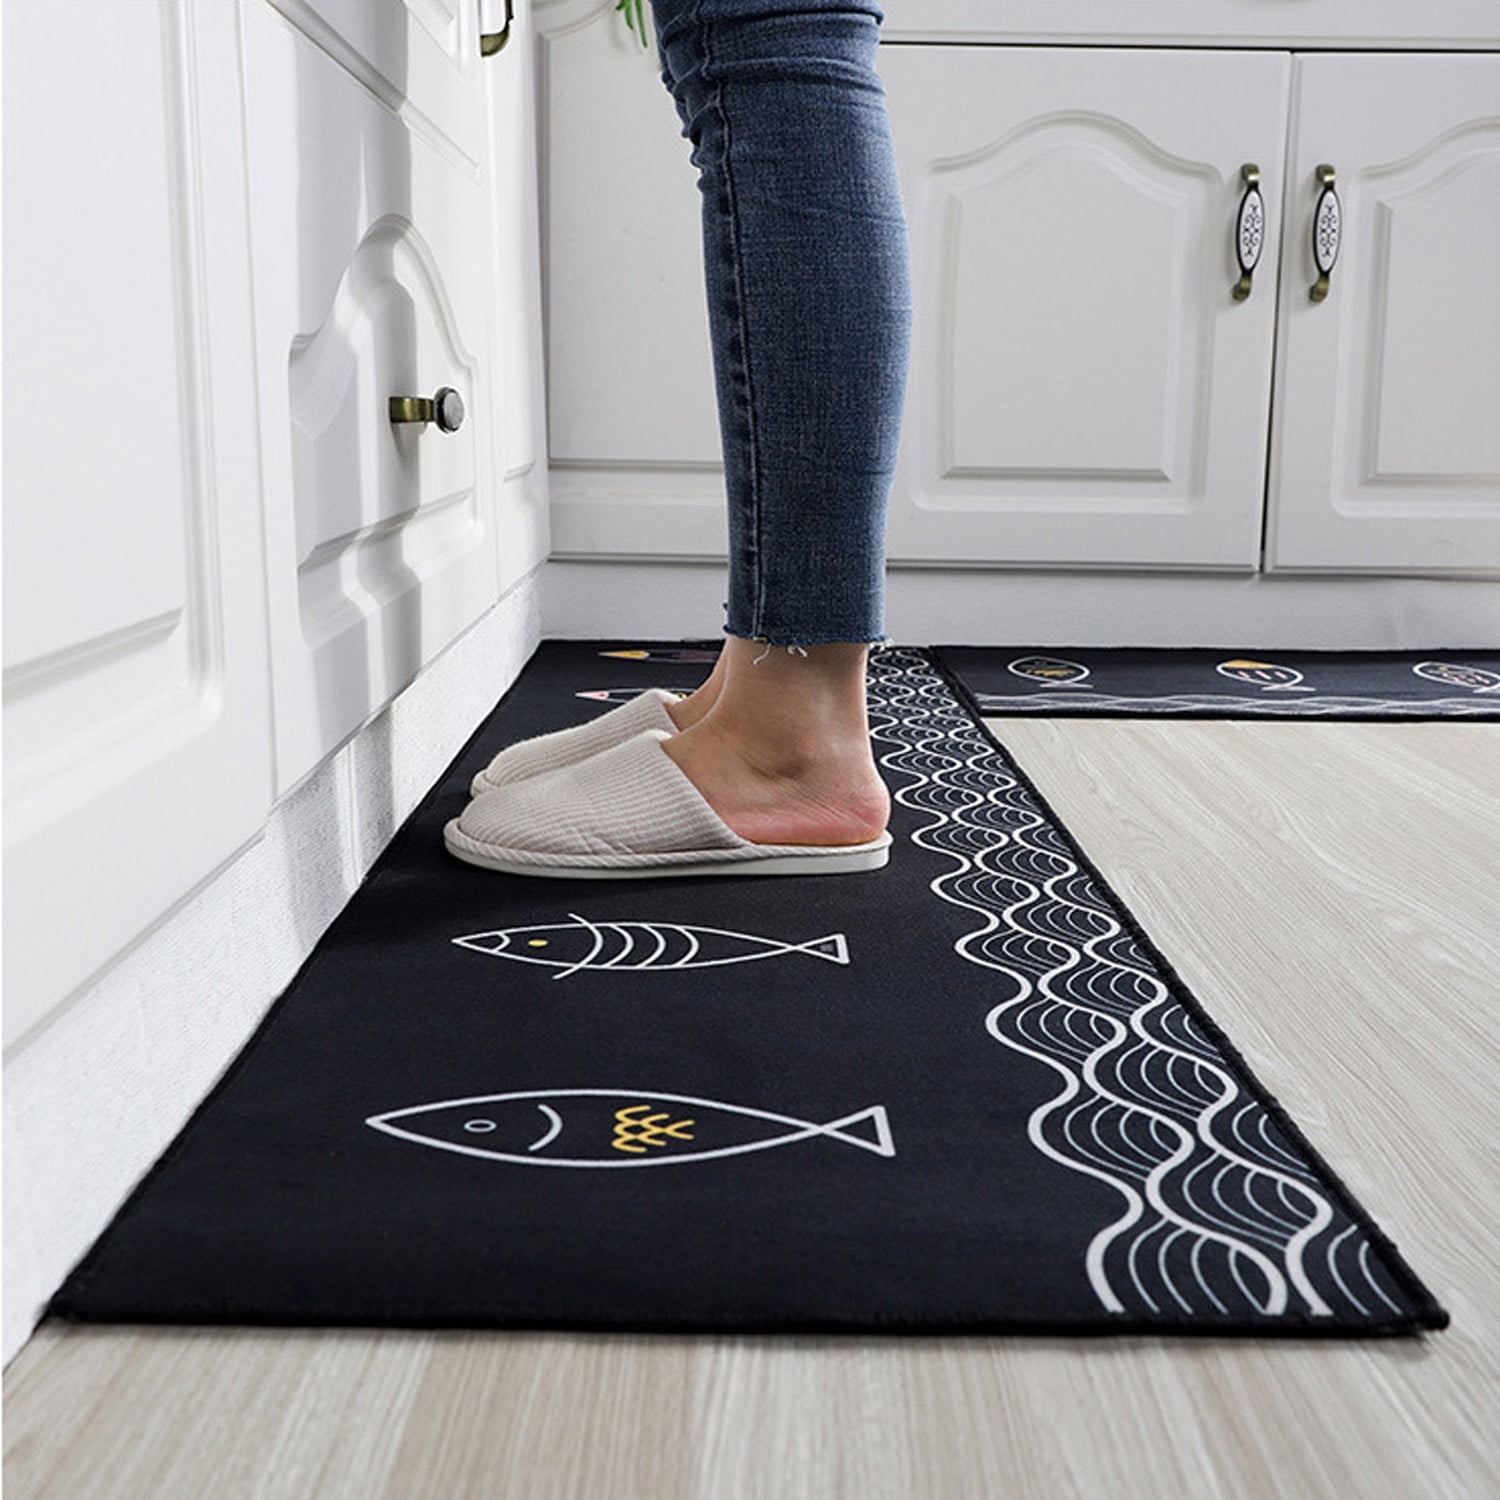 Runner Kitchen Rug Set 2 Piece Non Slip Kitchen Mat Doormat Home Kitchen Decor 